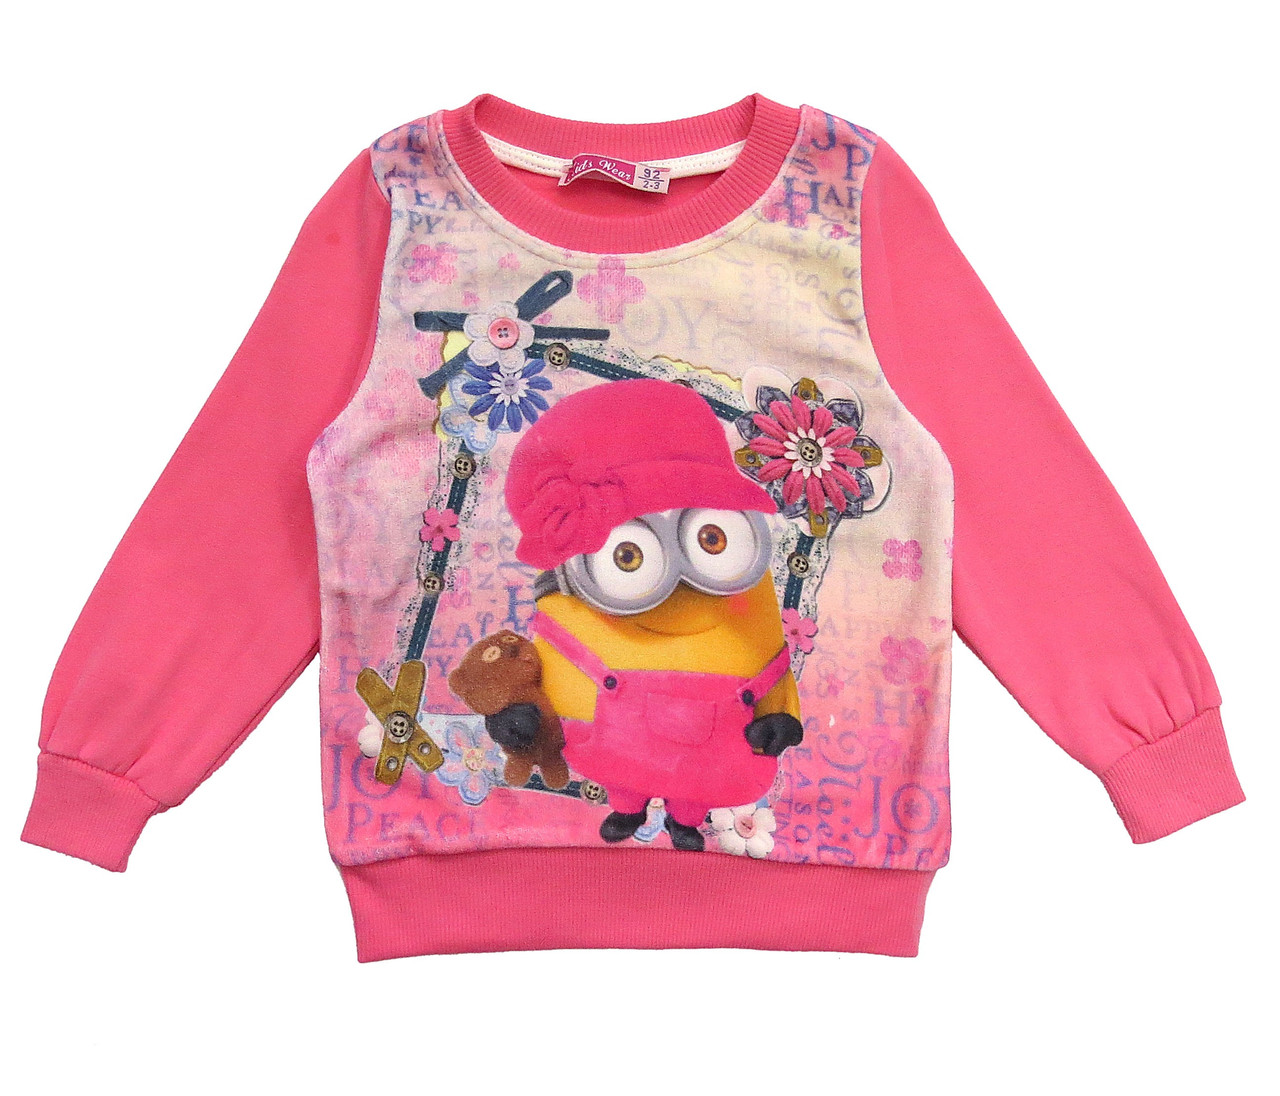 

Теплый свитшот Minions Kids Wear для девочки 110 см Розовый 11844